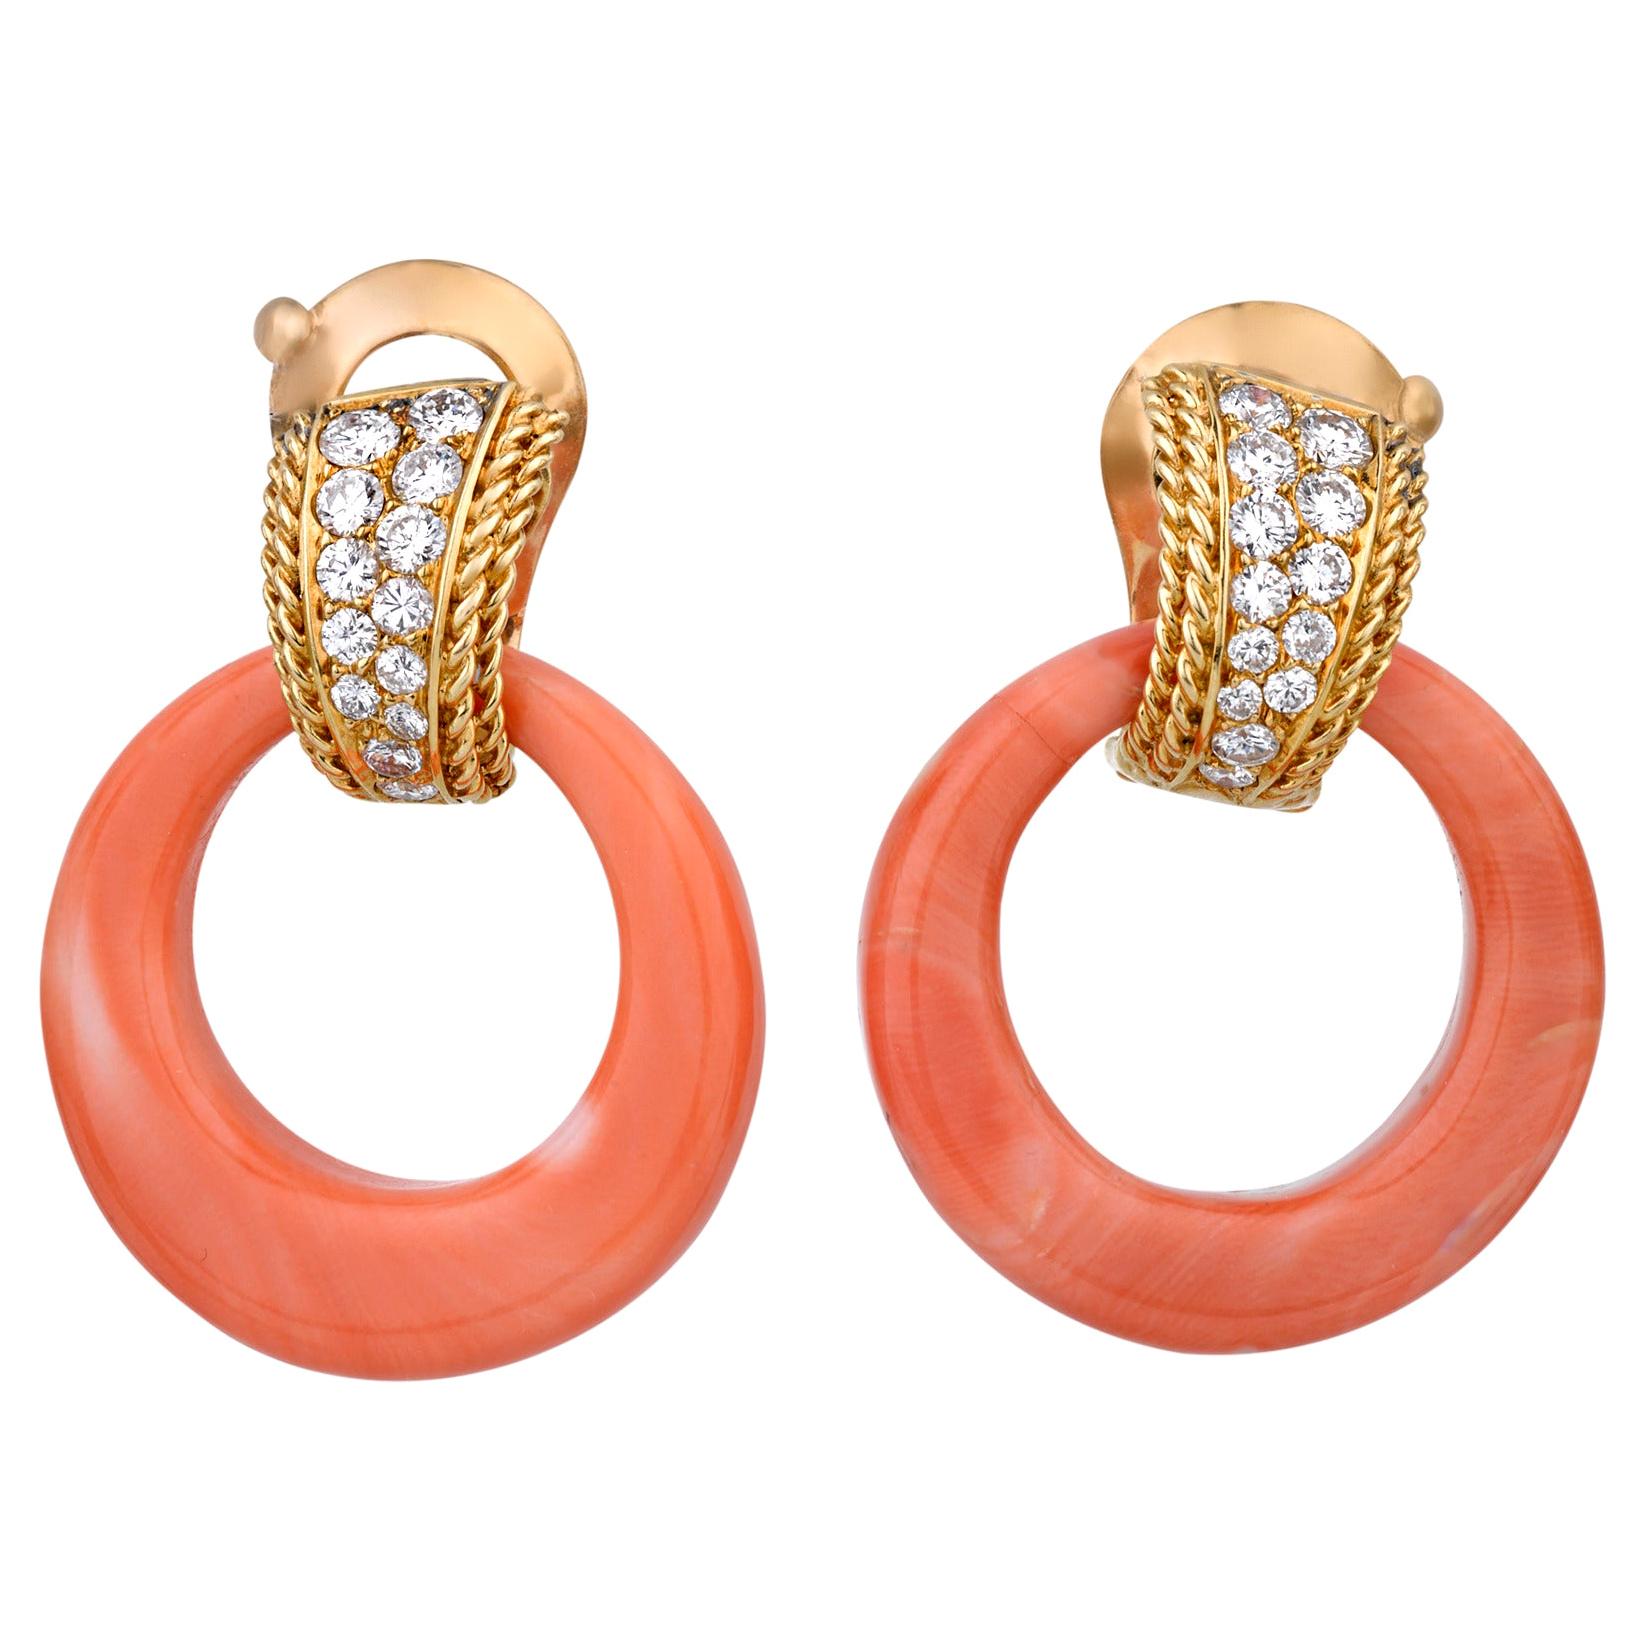 Coral and Diamond Earrings by Van Cleef & Arpels